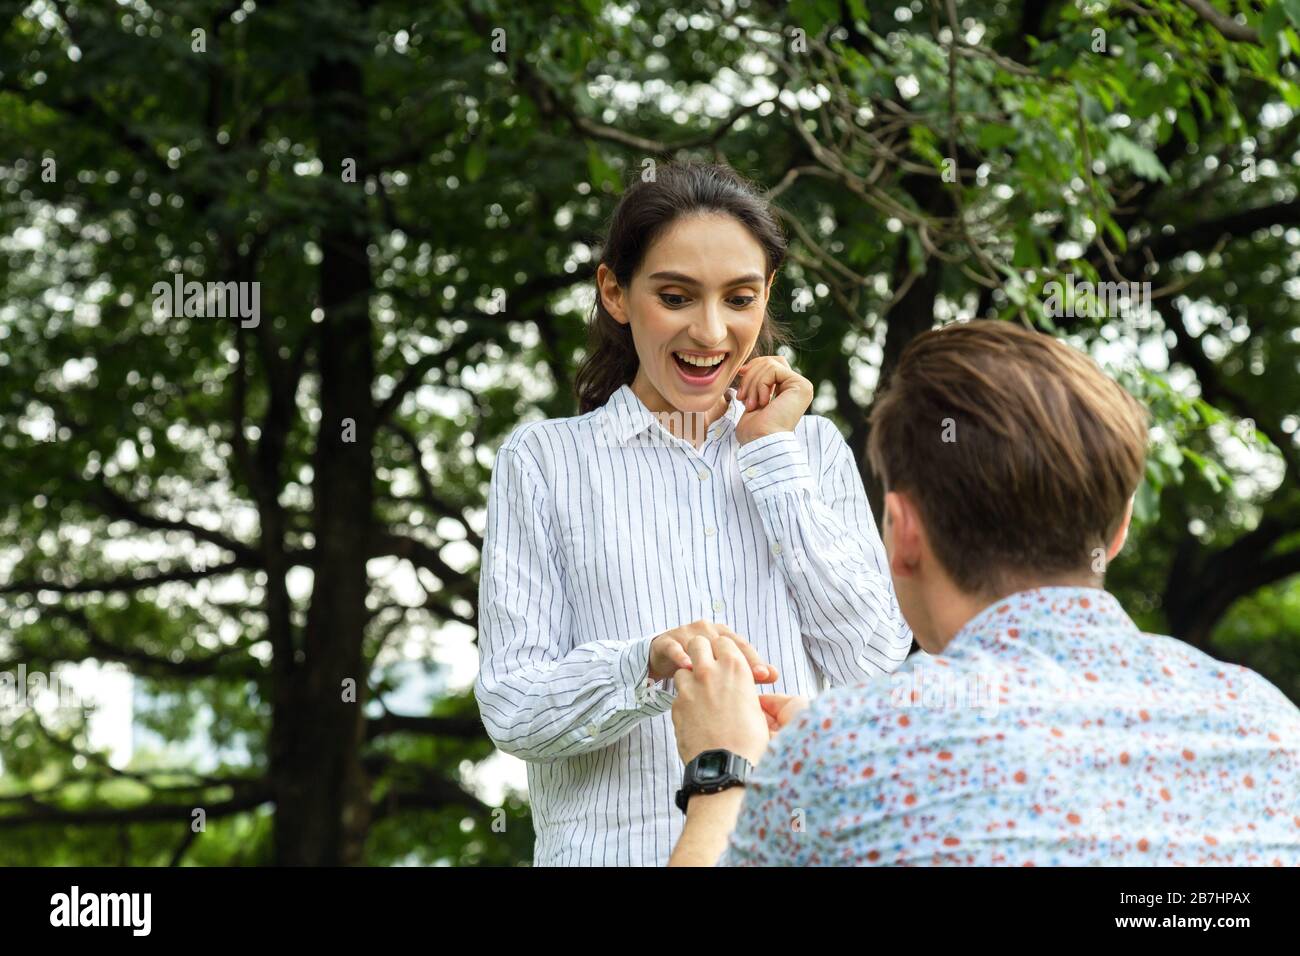 surprise jeune femme et sourire pendant que son petit ami mariage propose dans le parc. me marier. amour, couple, date, mariage - concept Banque D'Images